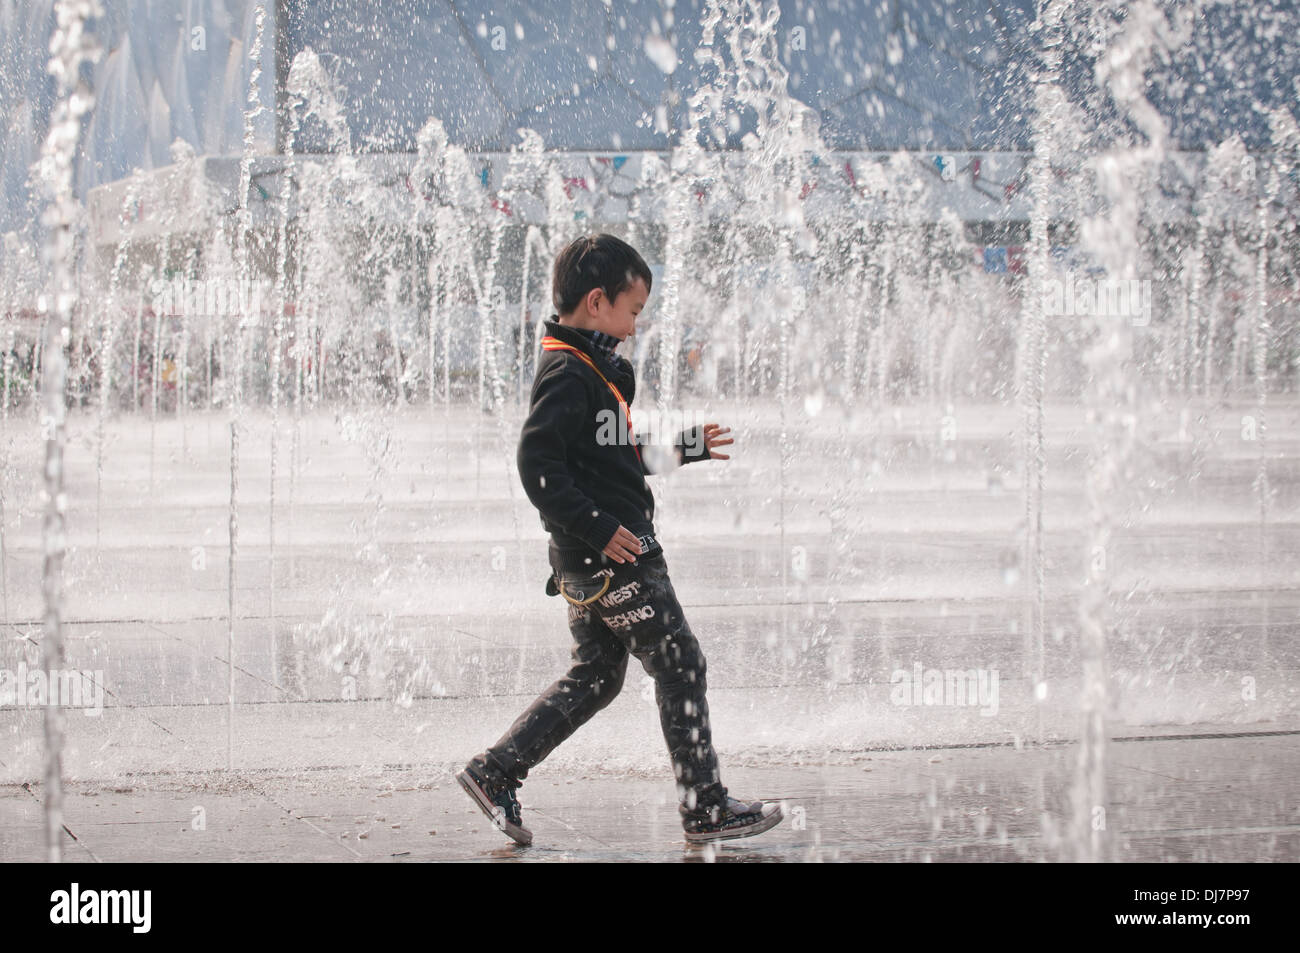 Brunnen vor Beijing National Aquatics Center allgemein bekannt als Water Cube Stockfoto